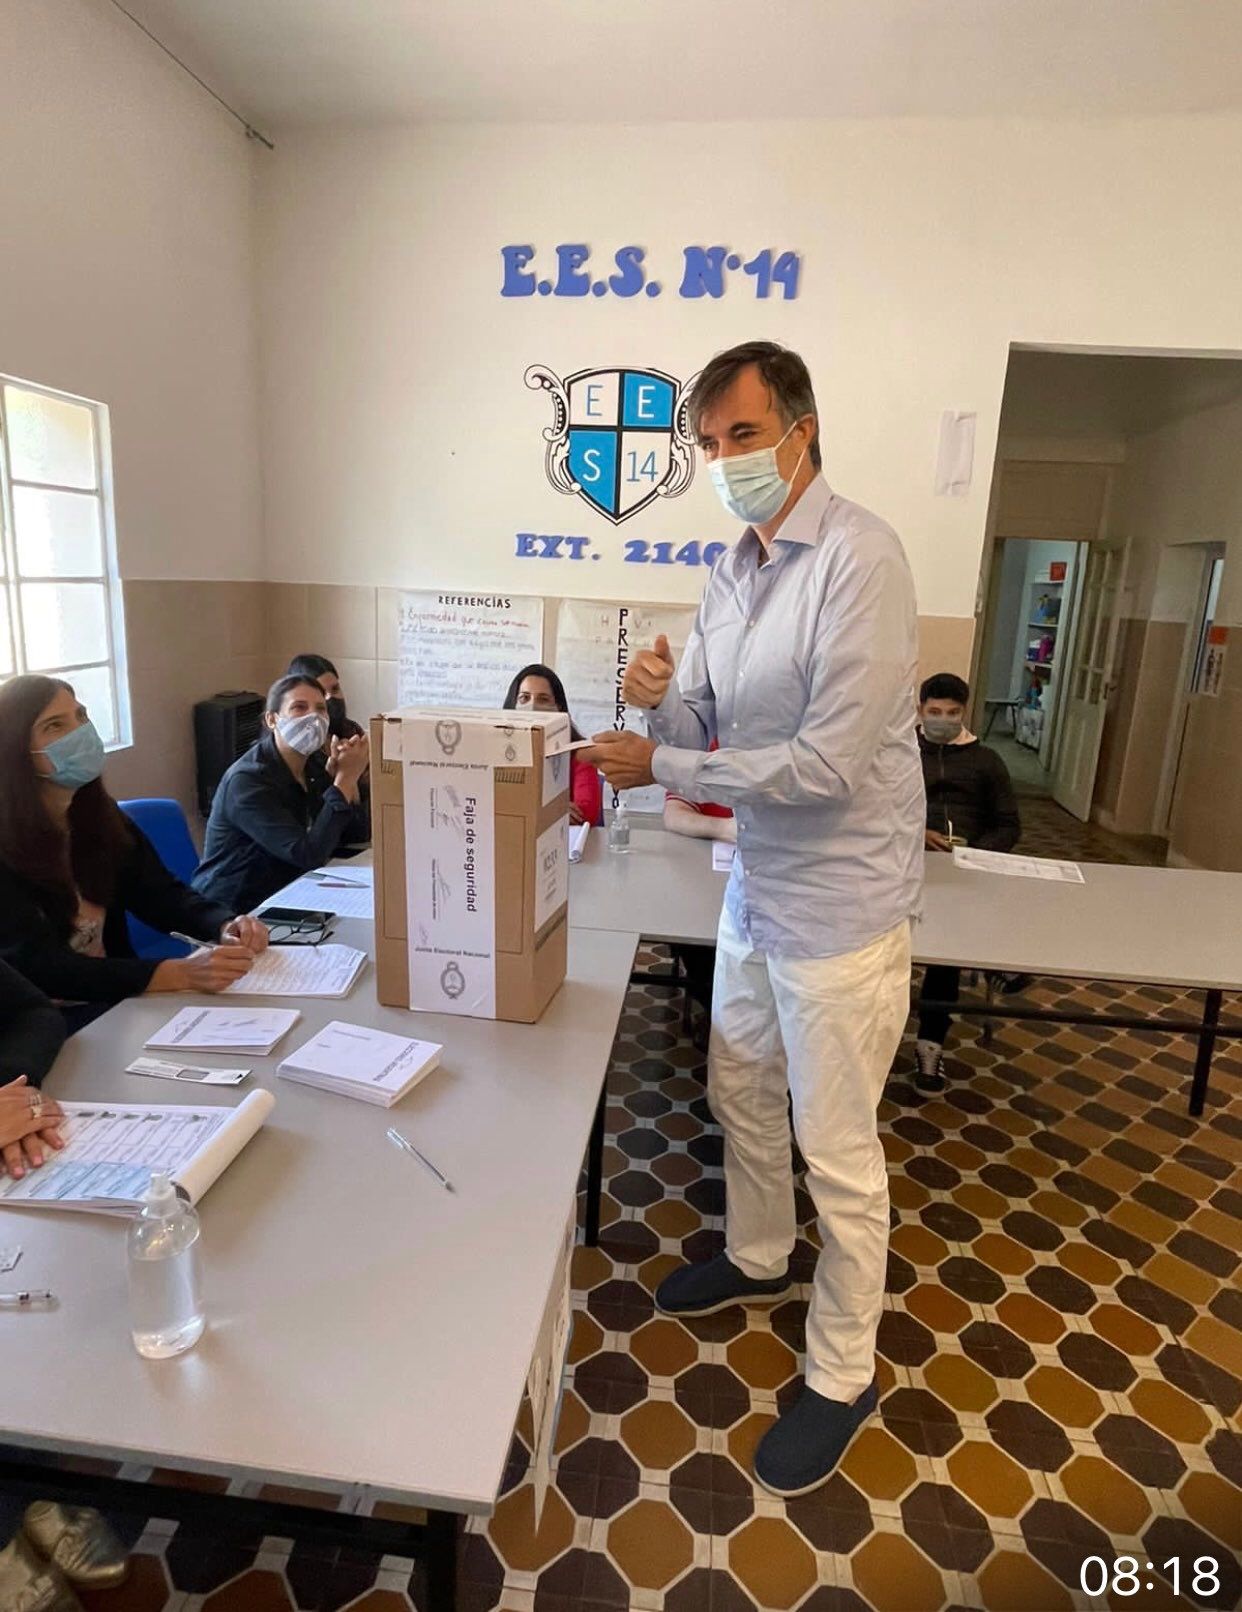 Votó Esteban Bullrich en Junín y emocionó a todos: "Votar es un privilegio al que no pienso renunciar"